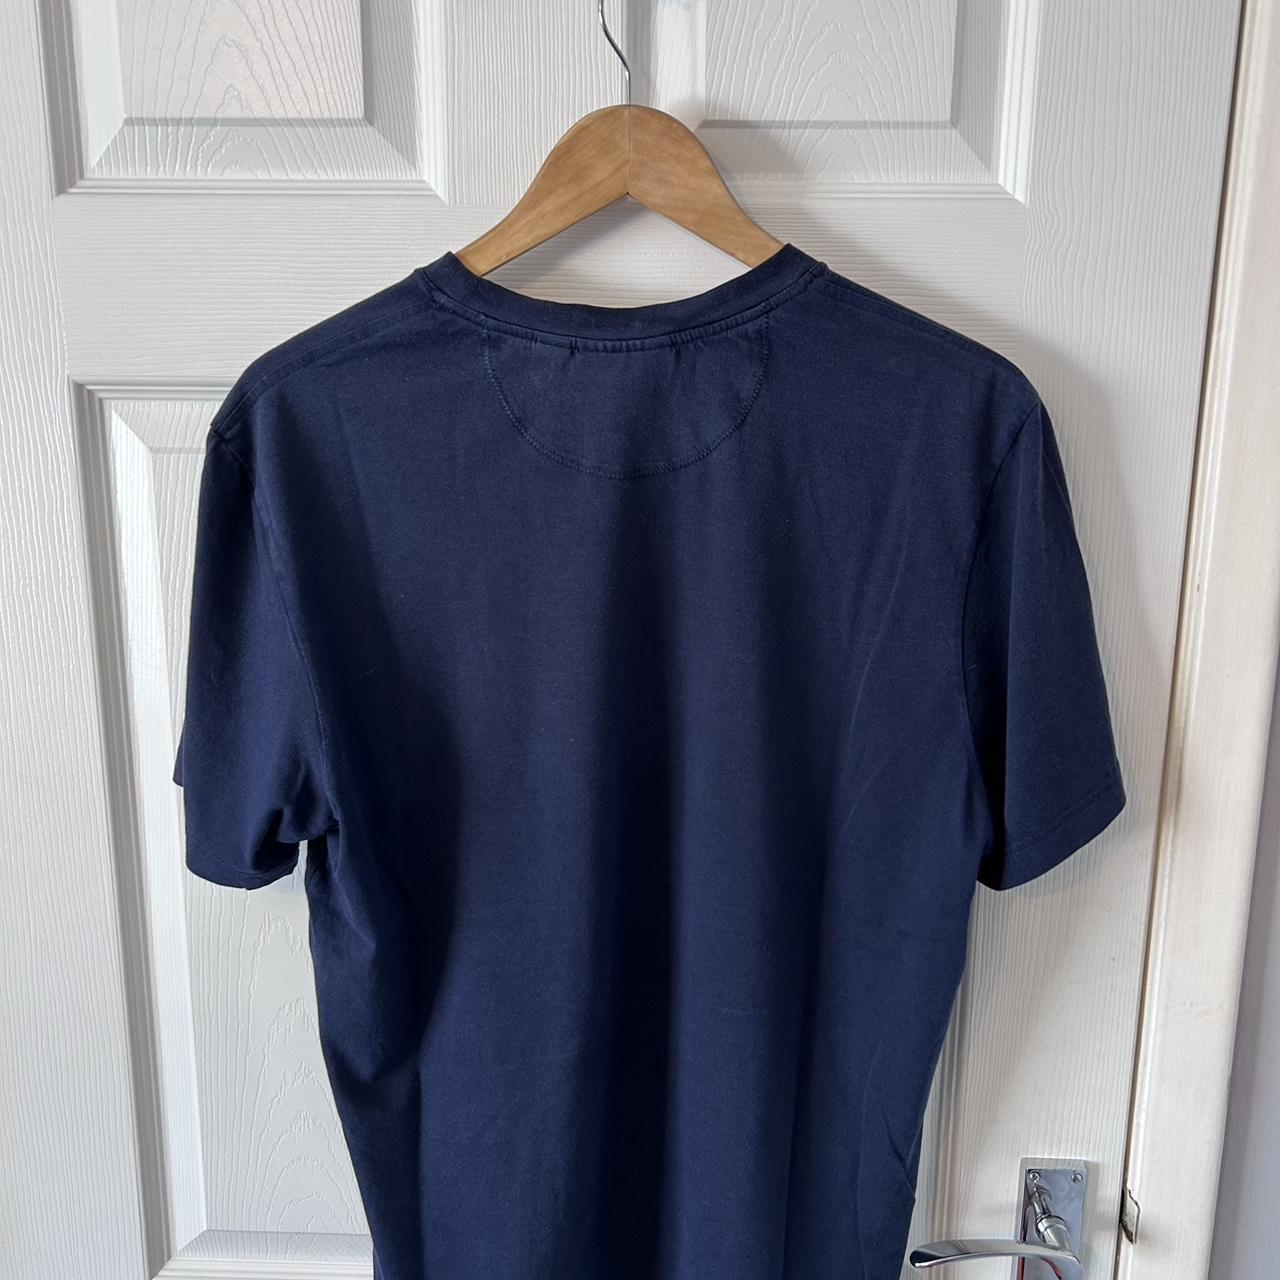 Lacoste T-shirt Size Large - Depop